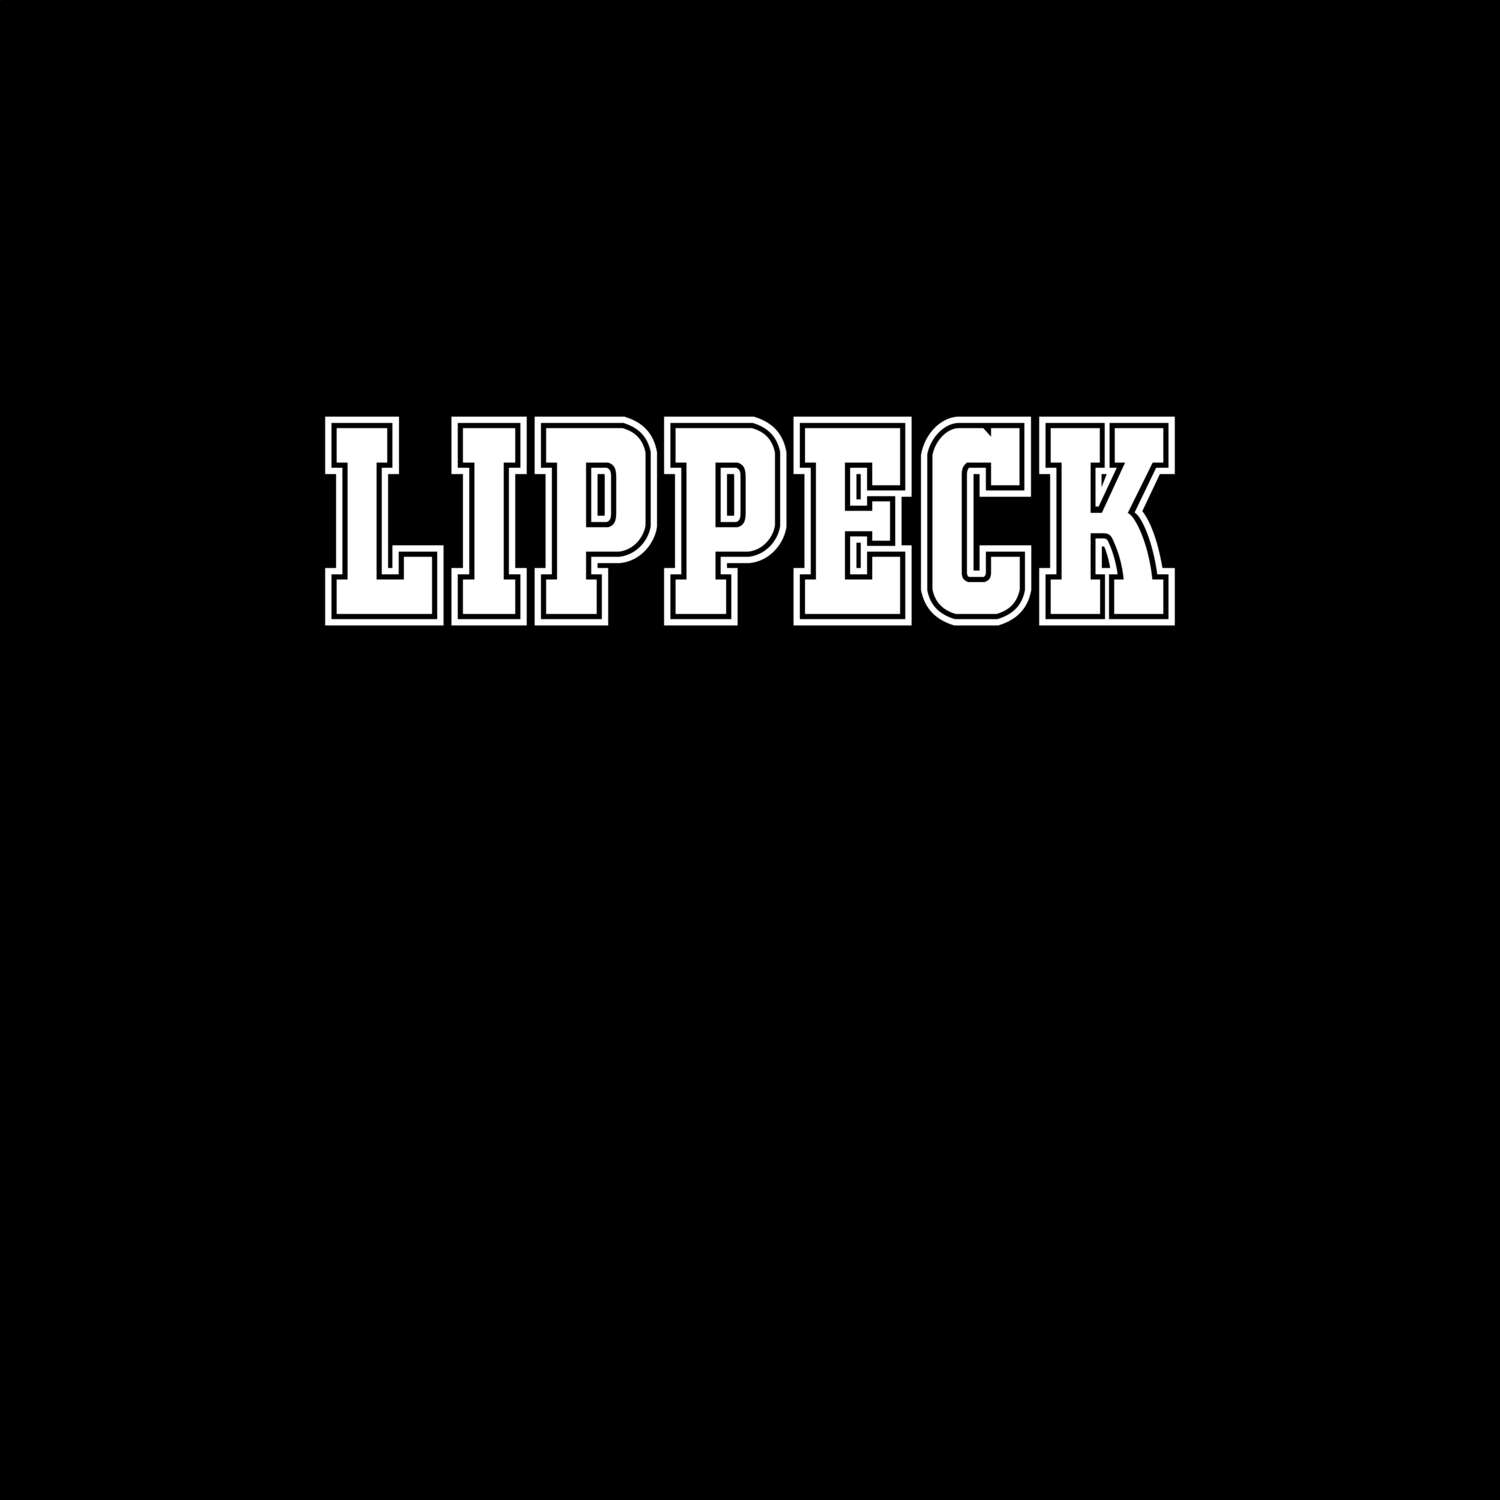 Lippeck T-Shirt »Classic«